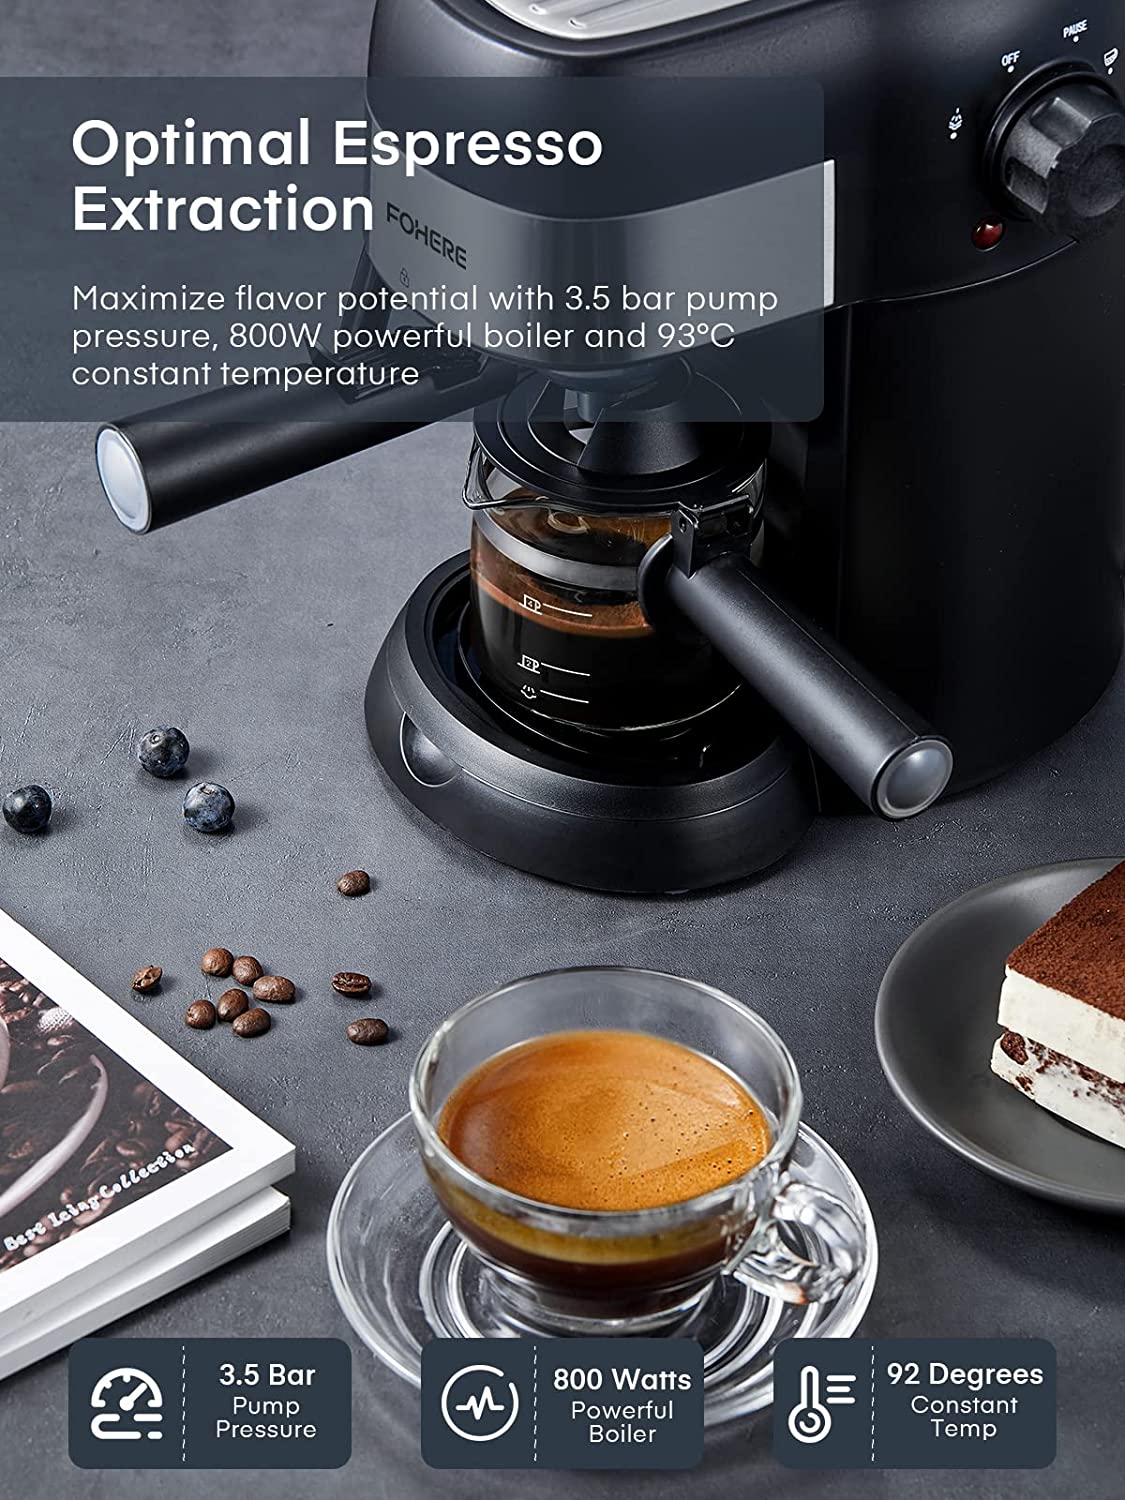 FOHERE Espresso Machine, 15 Bar Espresso and Cappuccino Maker with